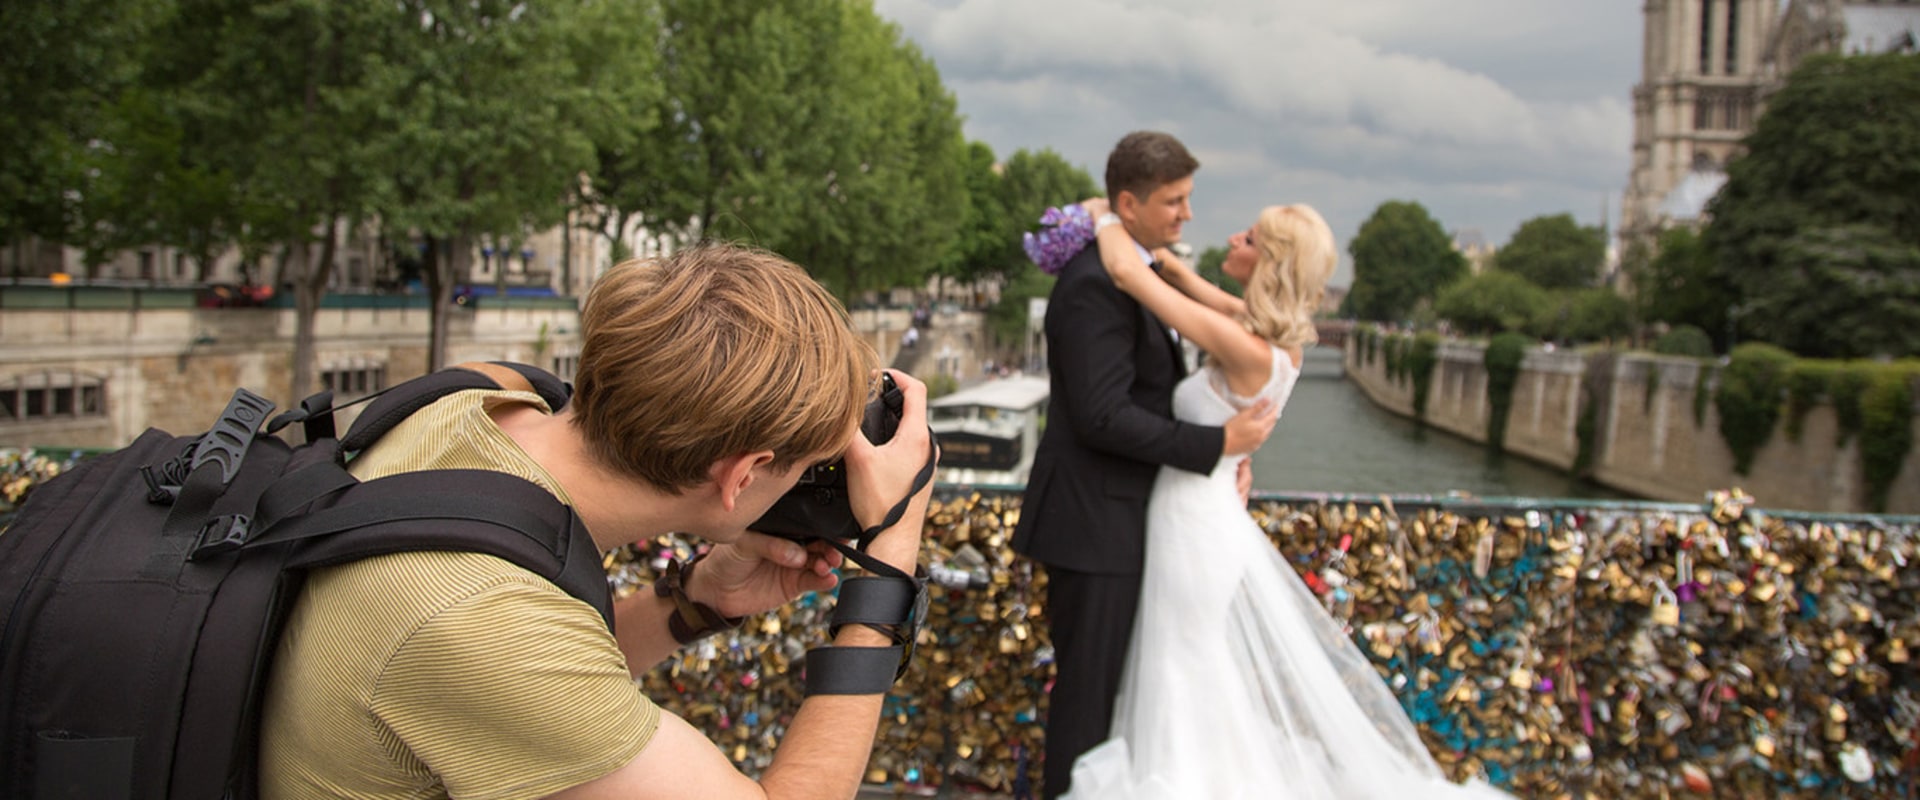 La clave para elegir un gran fotógrafo de bodas: comprobar reseñas y referencias